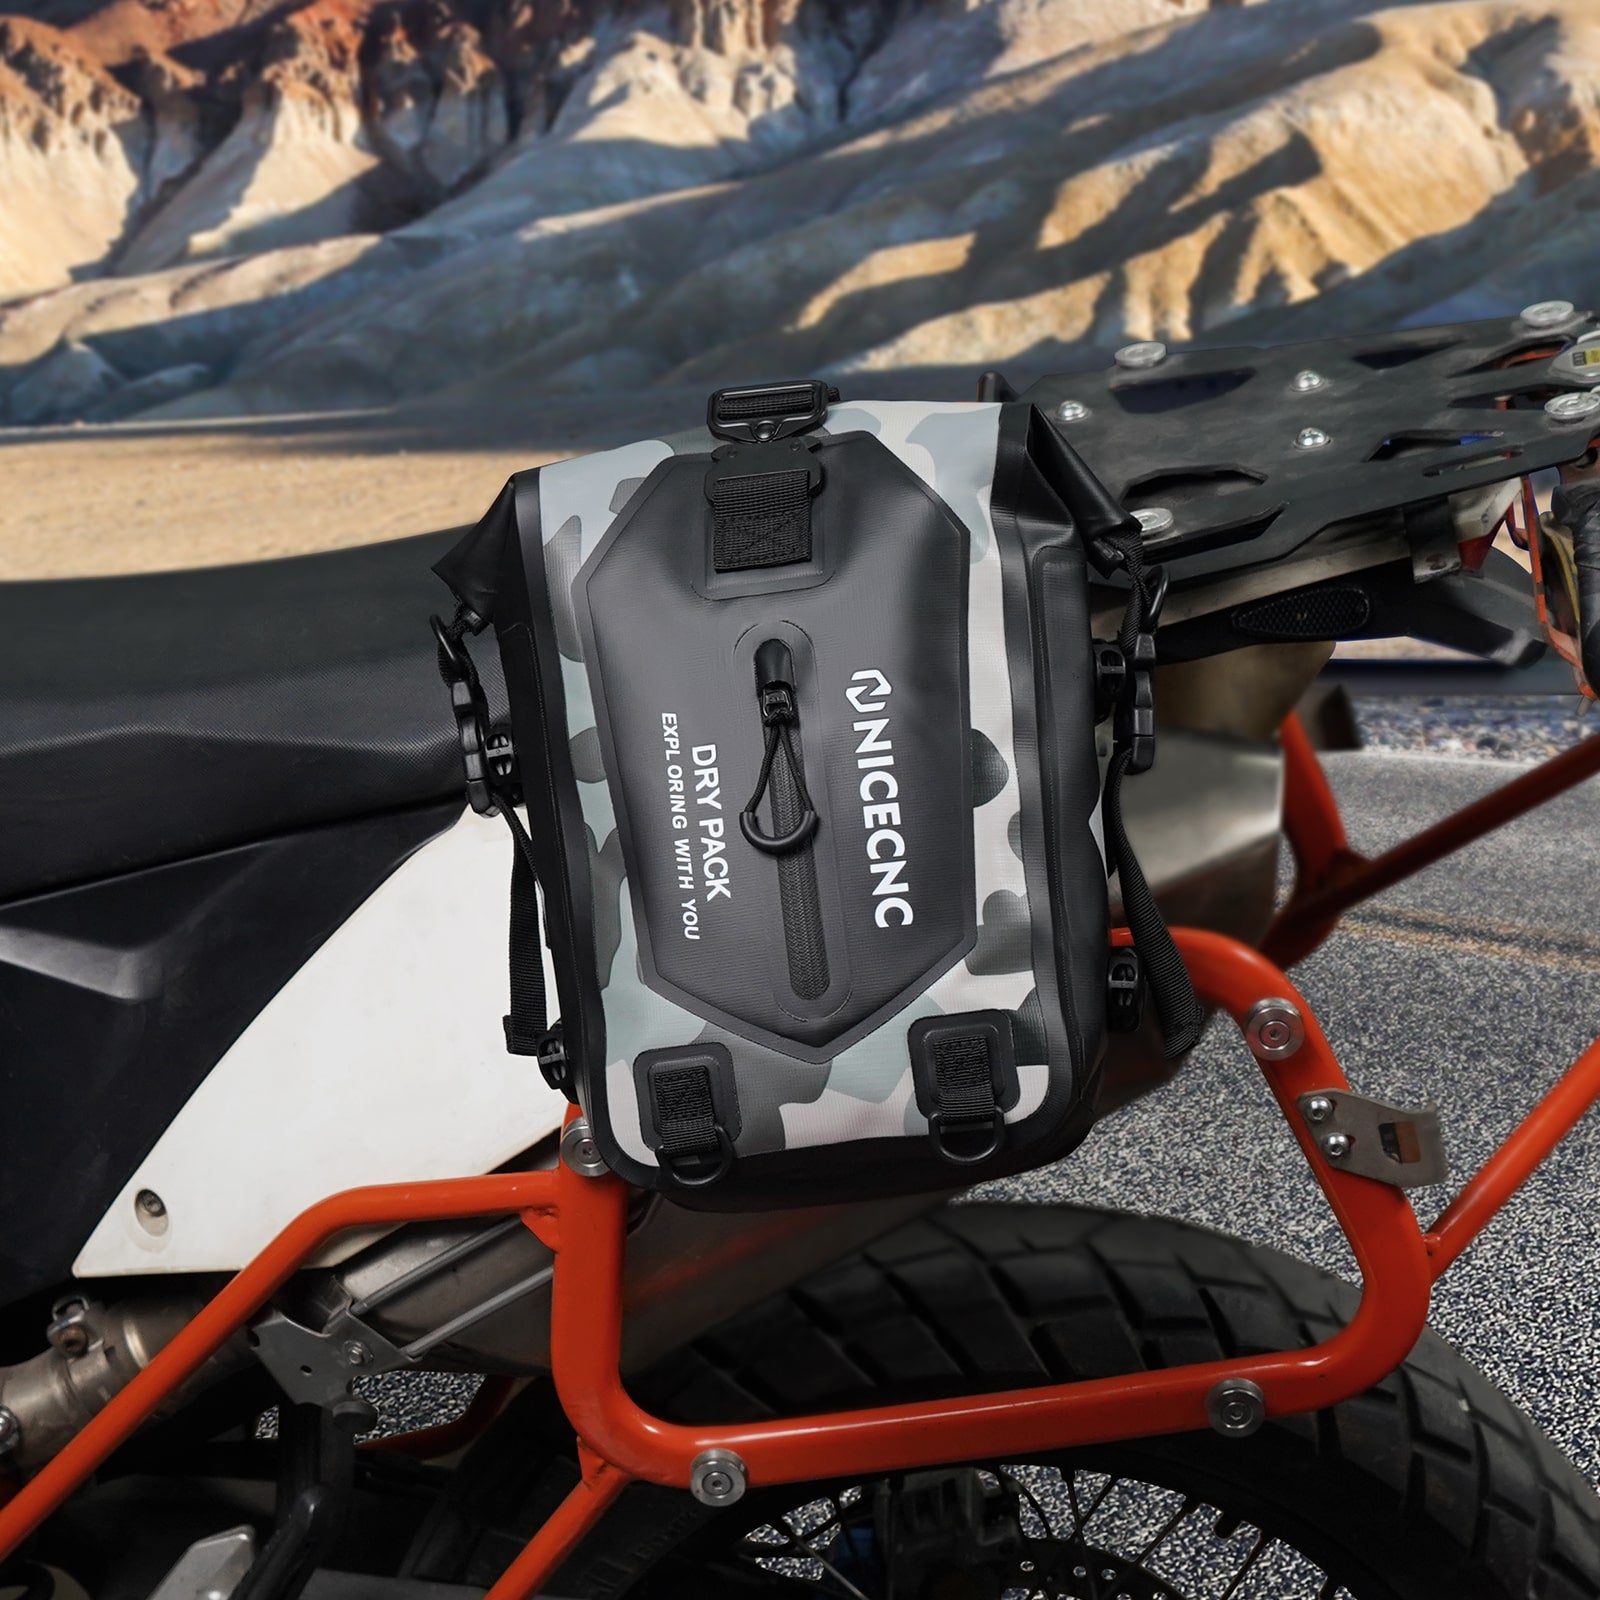 Universal Motorcycle ATV Dry Tail Bag Waterproof Storage Sissy Bar Luggage Bag